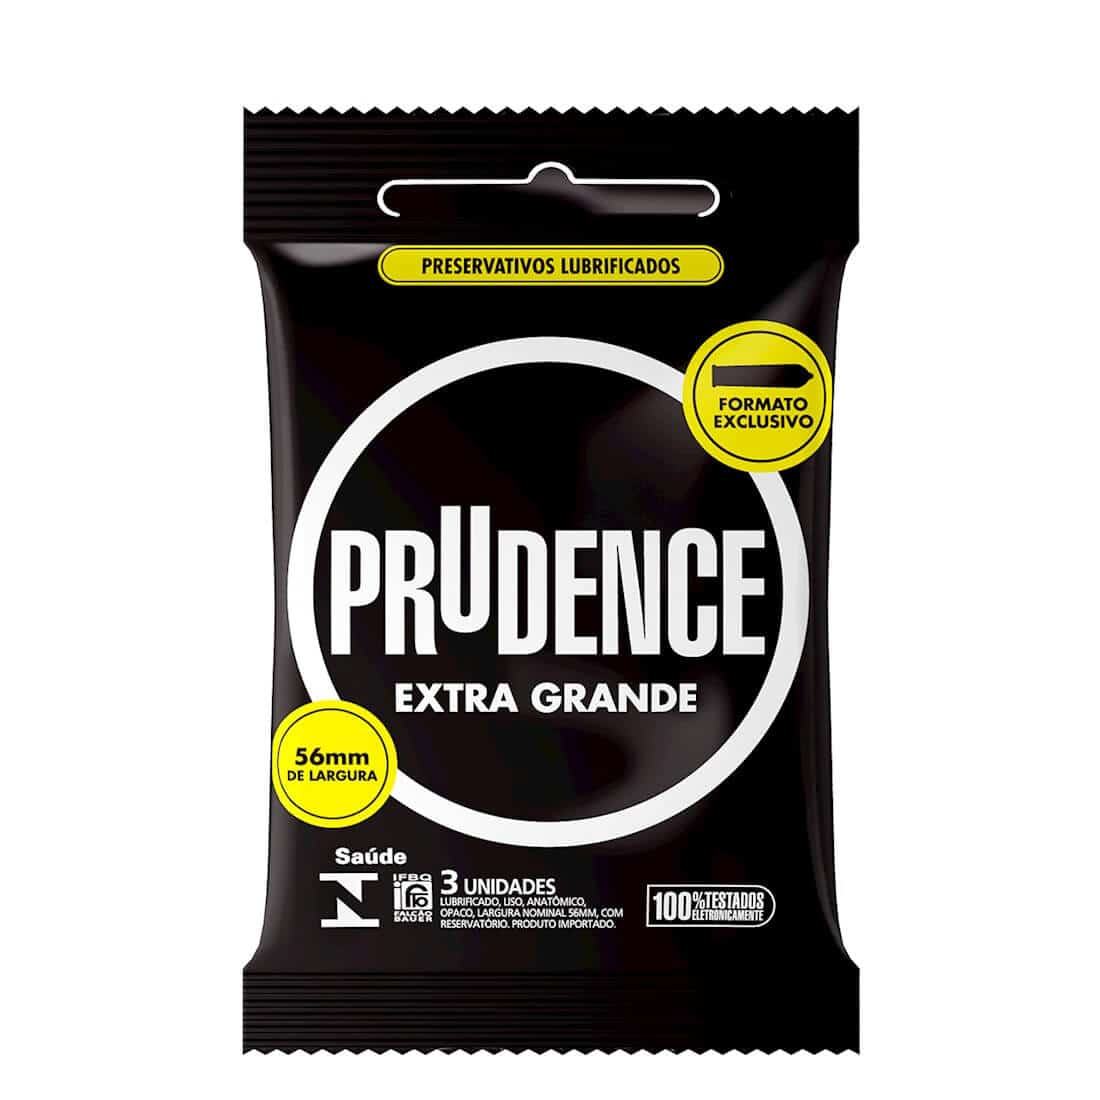 Preservativo Prudence Extra Grande. A Camisinha tamanho G